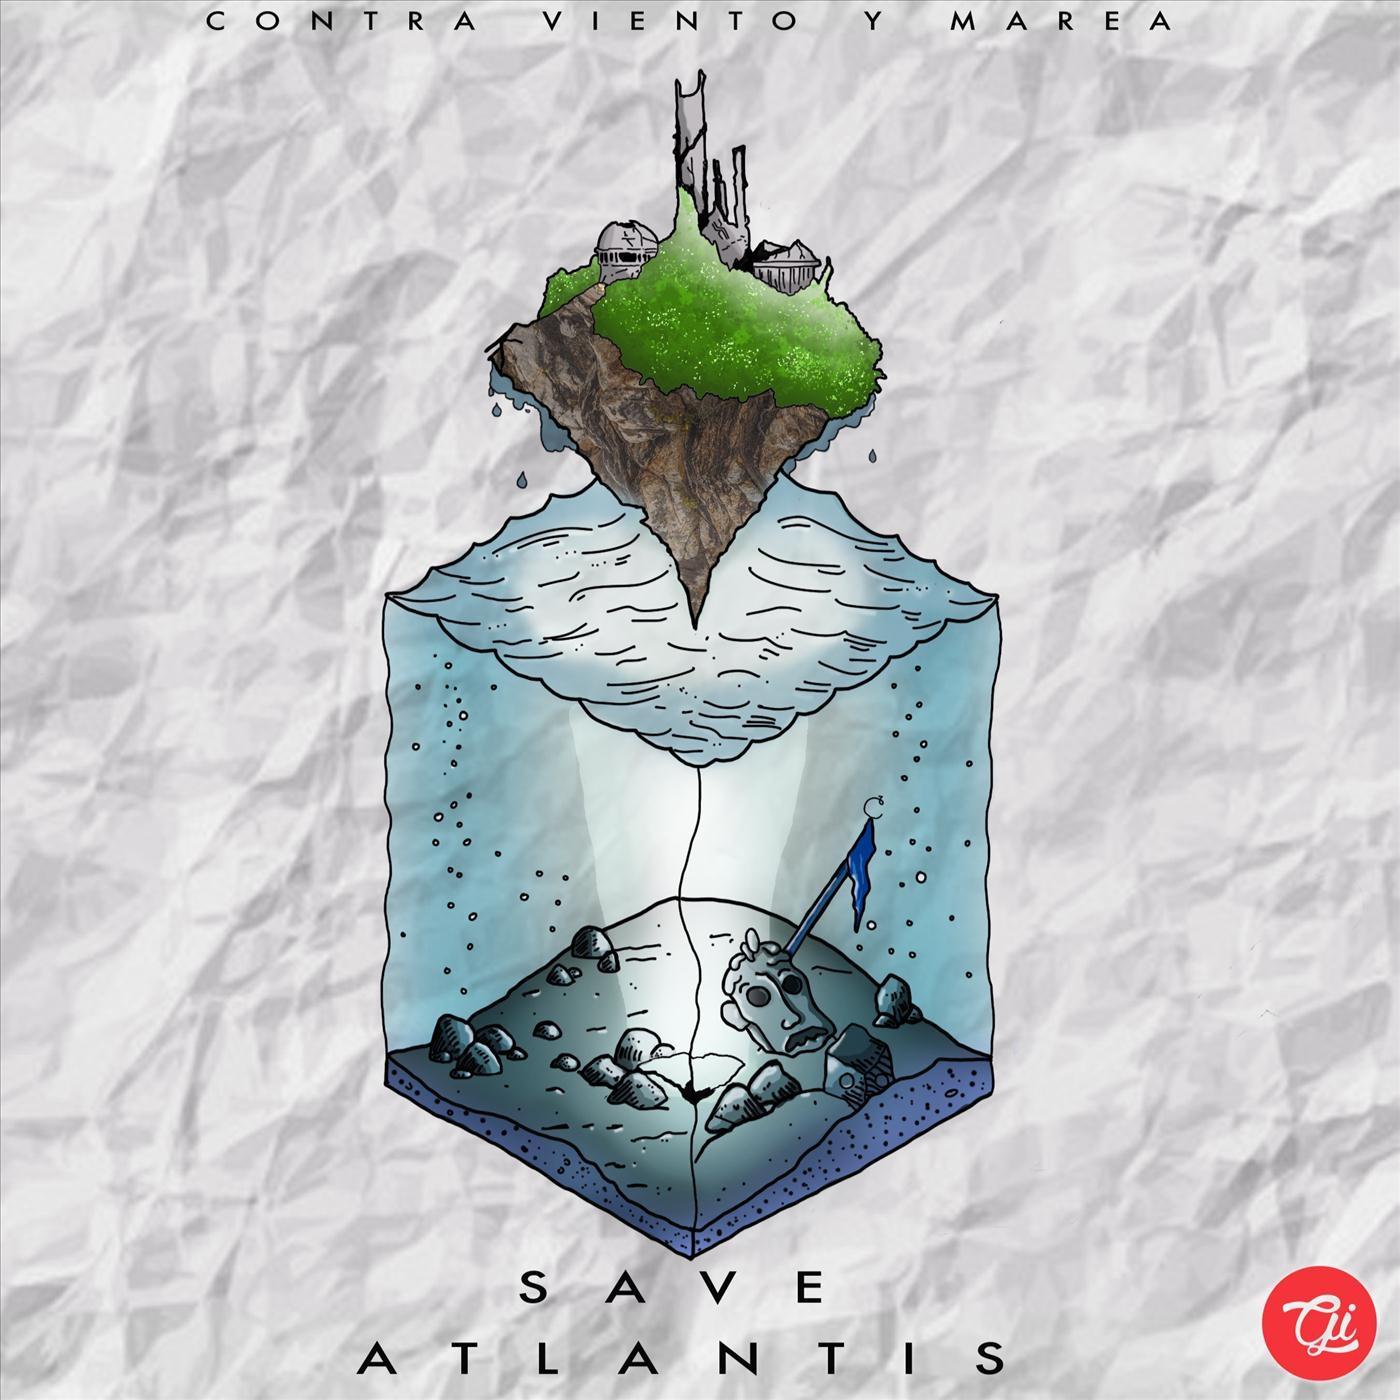 Save Atlantis! - Unidos (feat. Mane Nuno)